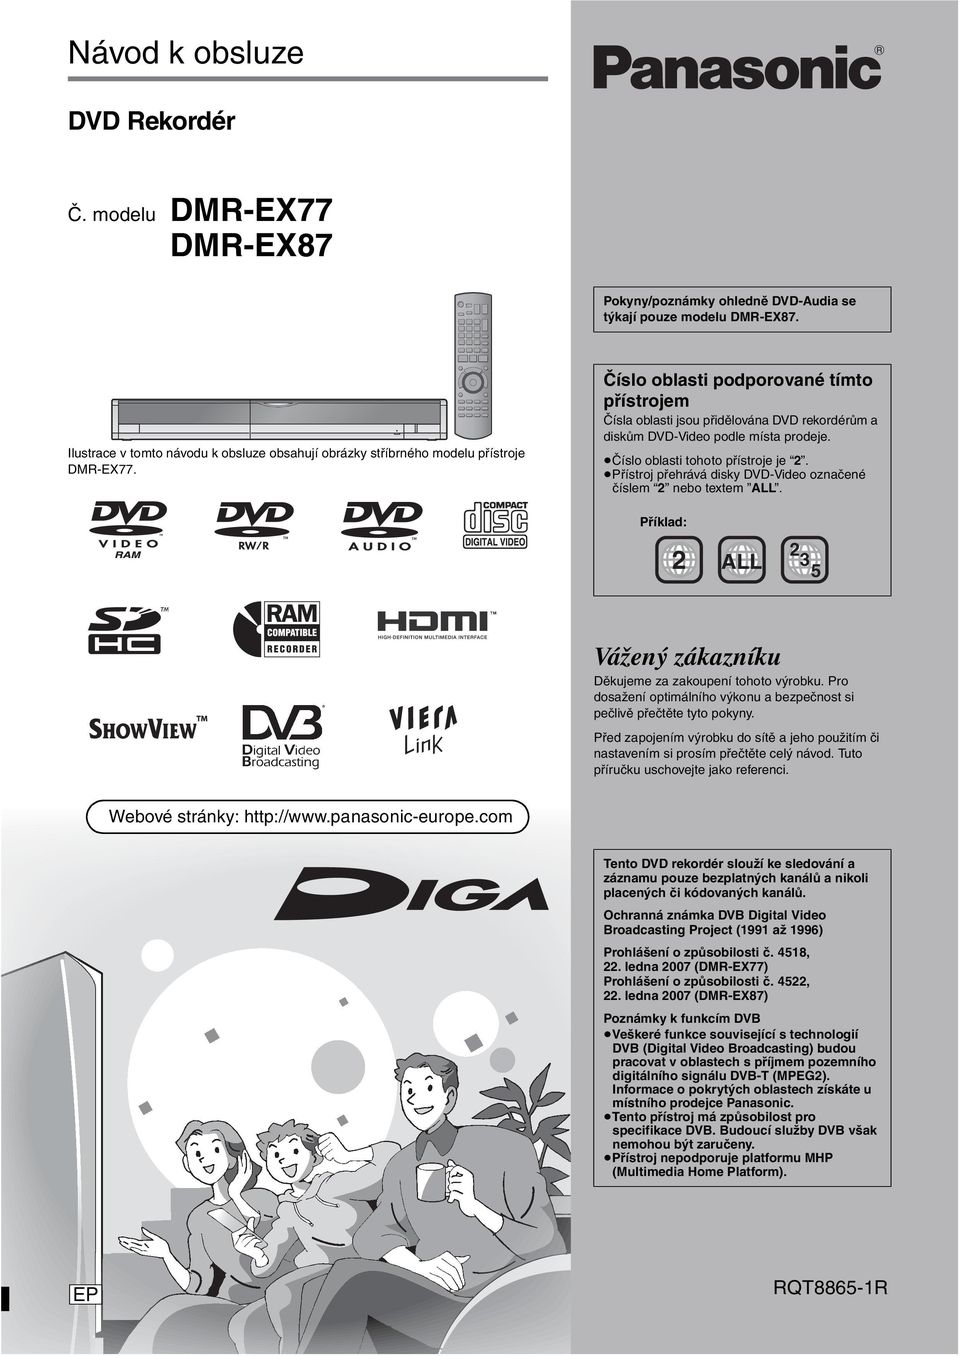 Číslo oblasti podporované tímto přístrojem Čísla oblasti jsou přidělována DVD rekordérům a diskům DVD-Video podle místa prodeje. Číslo oblasti tohoto přístroje je 2.